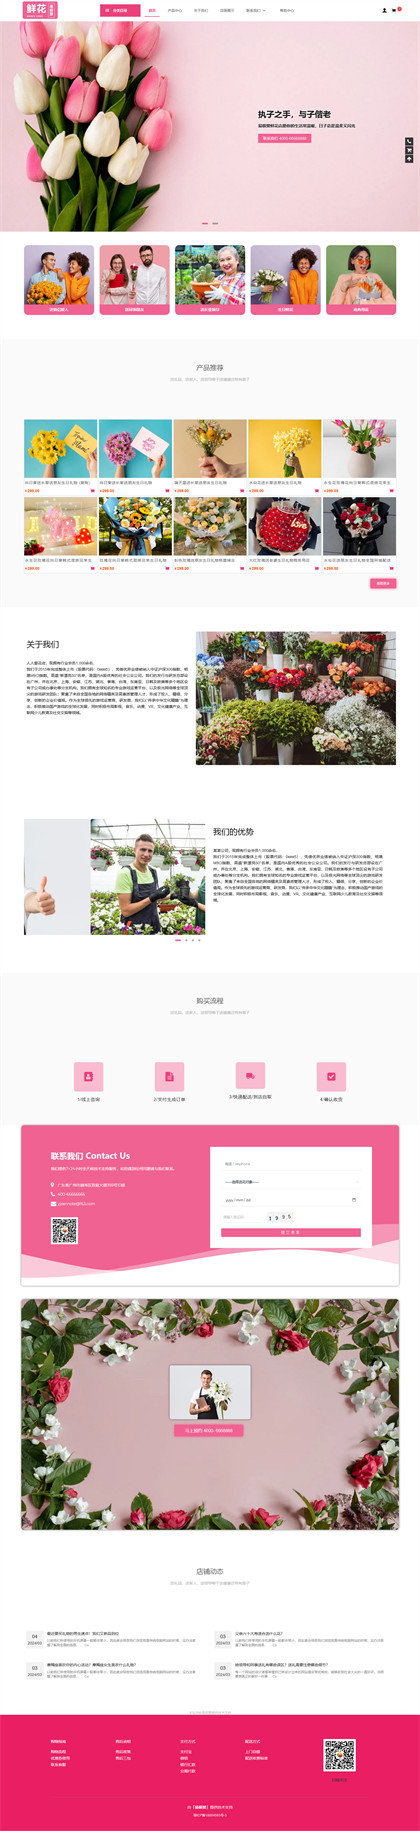 花店-鲜花店-花卉市场-花鸟鱼虫市场商城网站模板网站模板图片